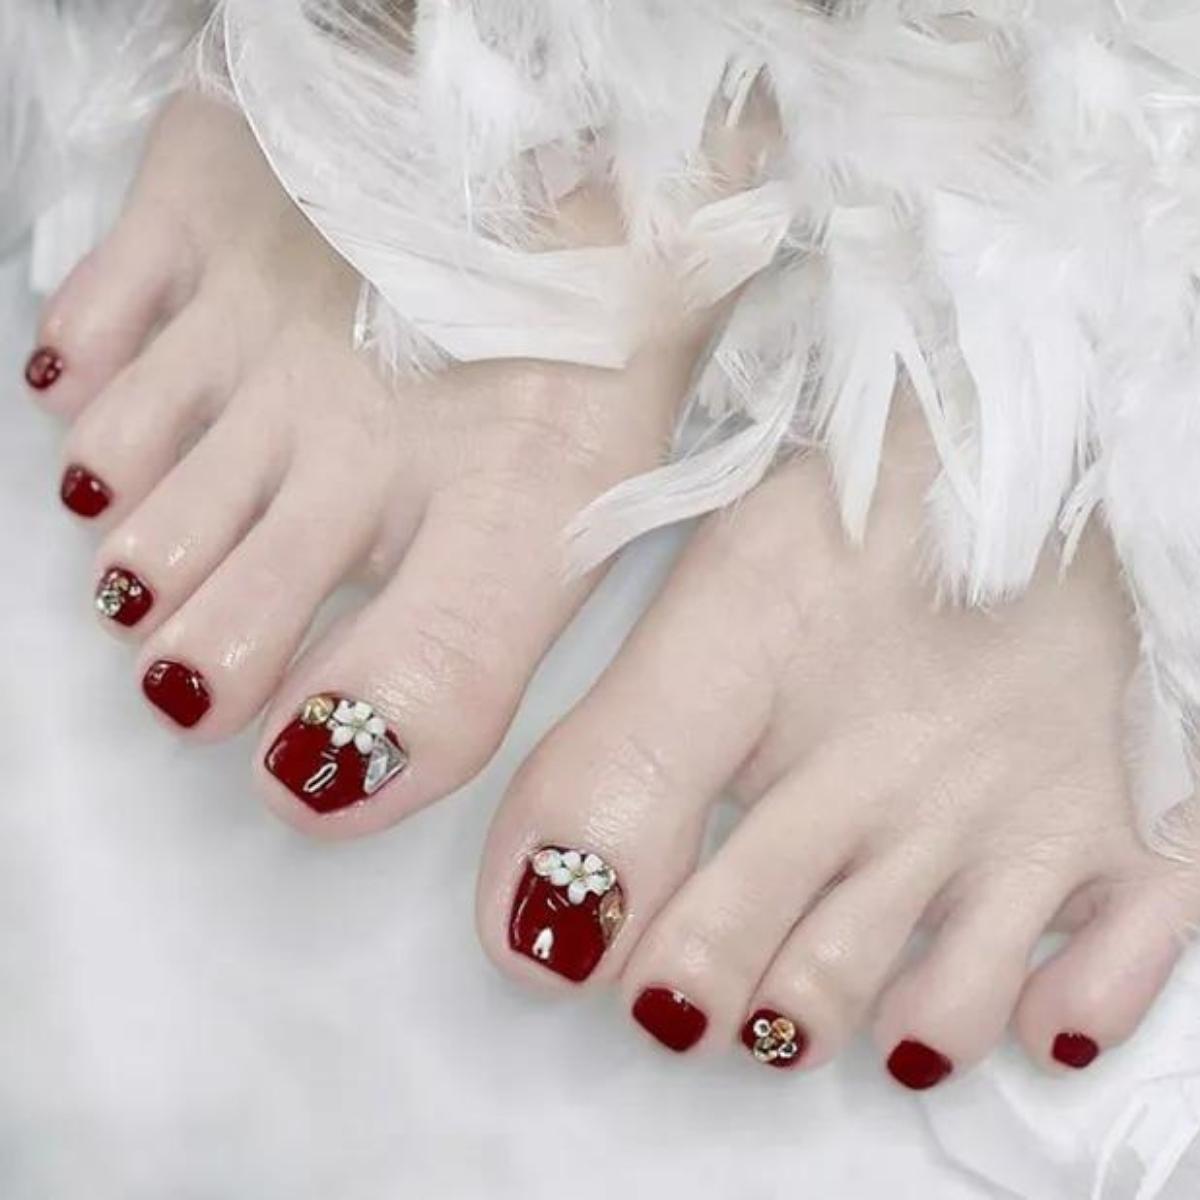 Nail chân đỏ ối đính kèm đá và hoa đơn giản và giản dị, thanh lịch trọng